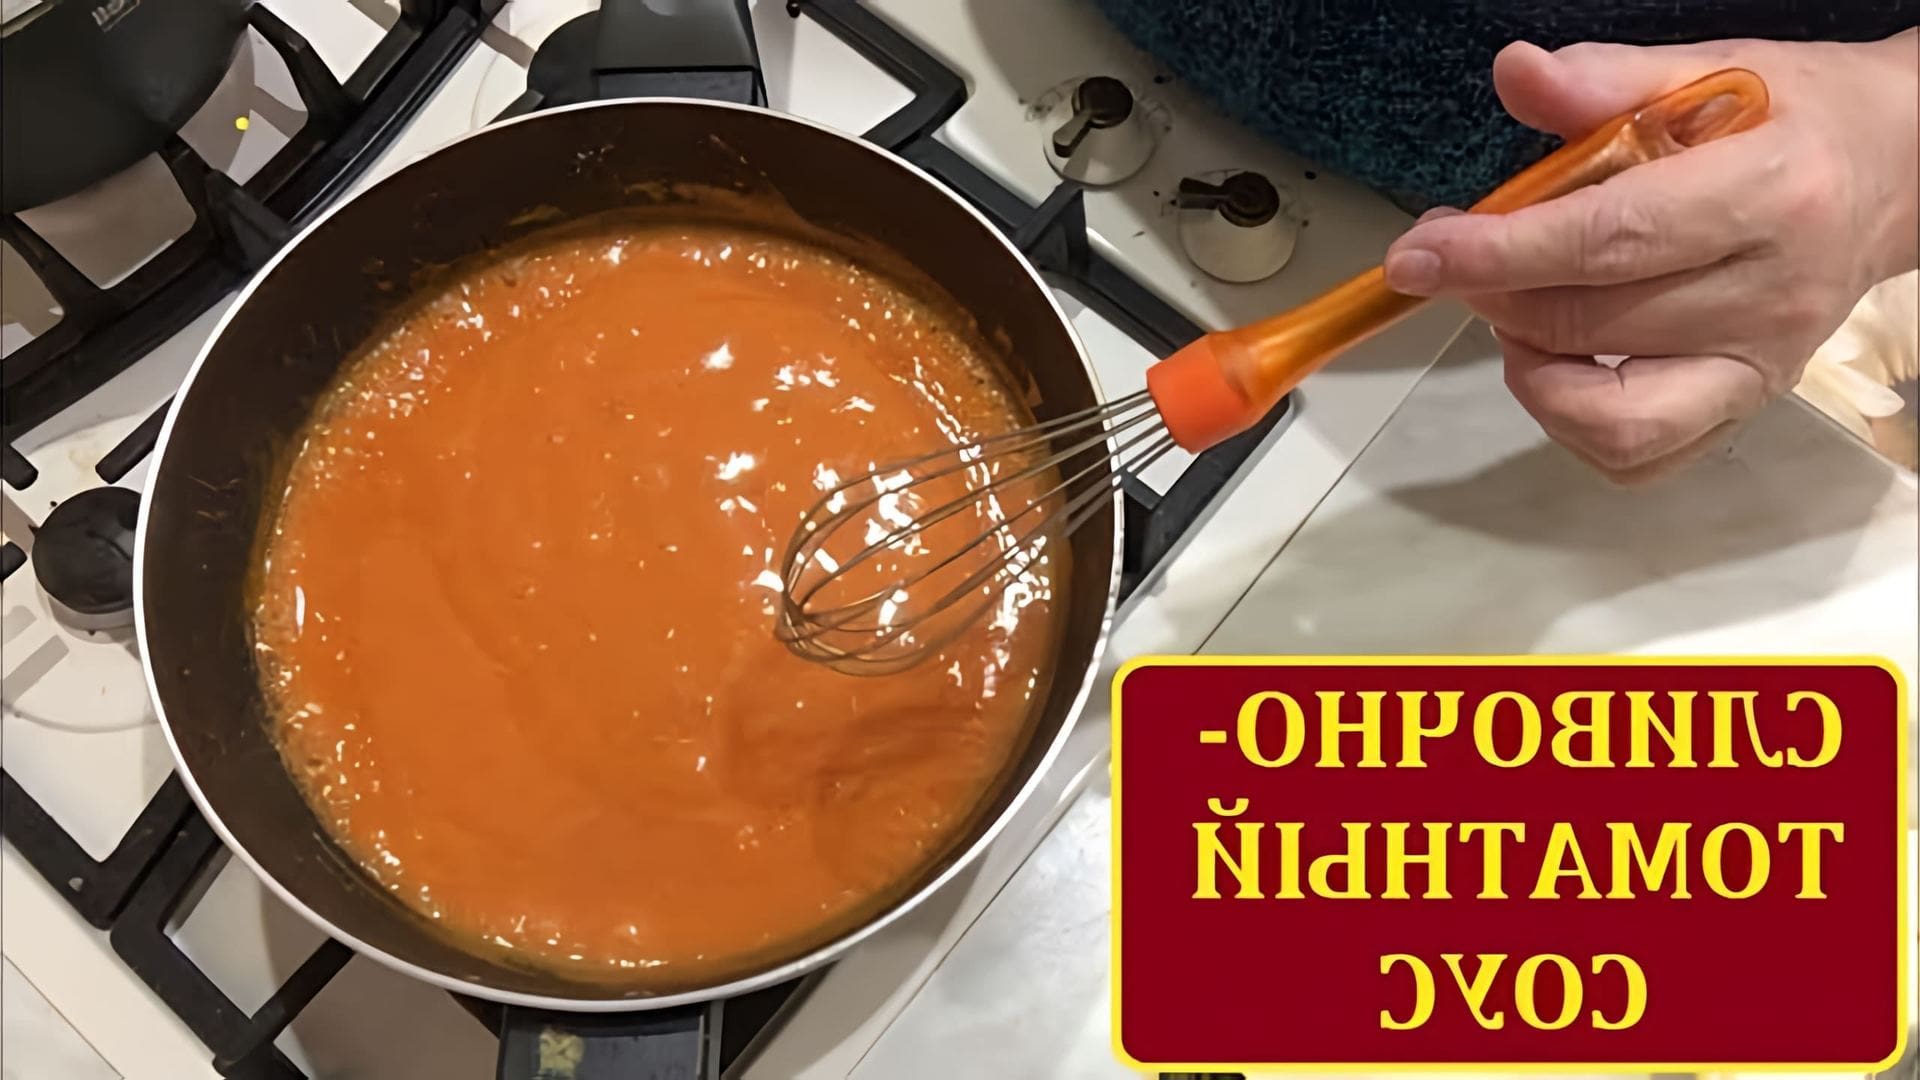 В этом видео демонстрируется процесс приготовления сливочно-томатного соуса